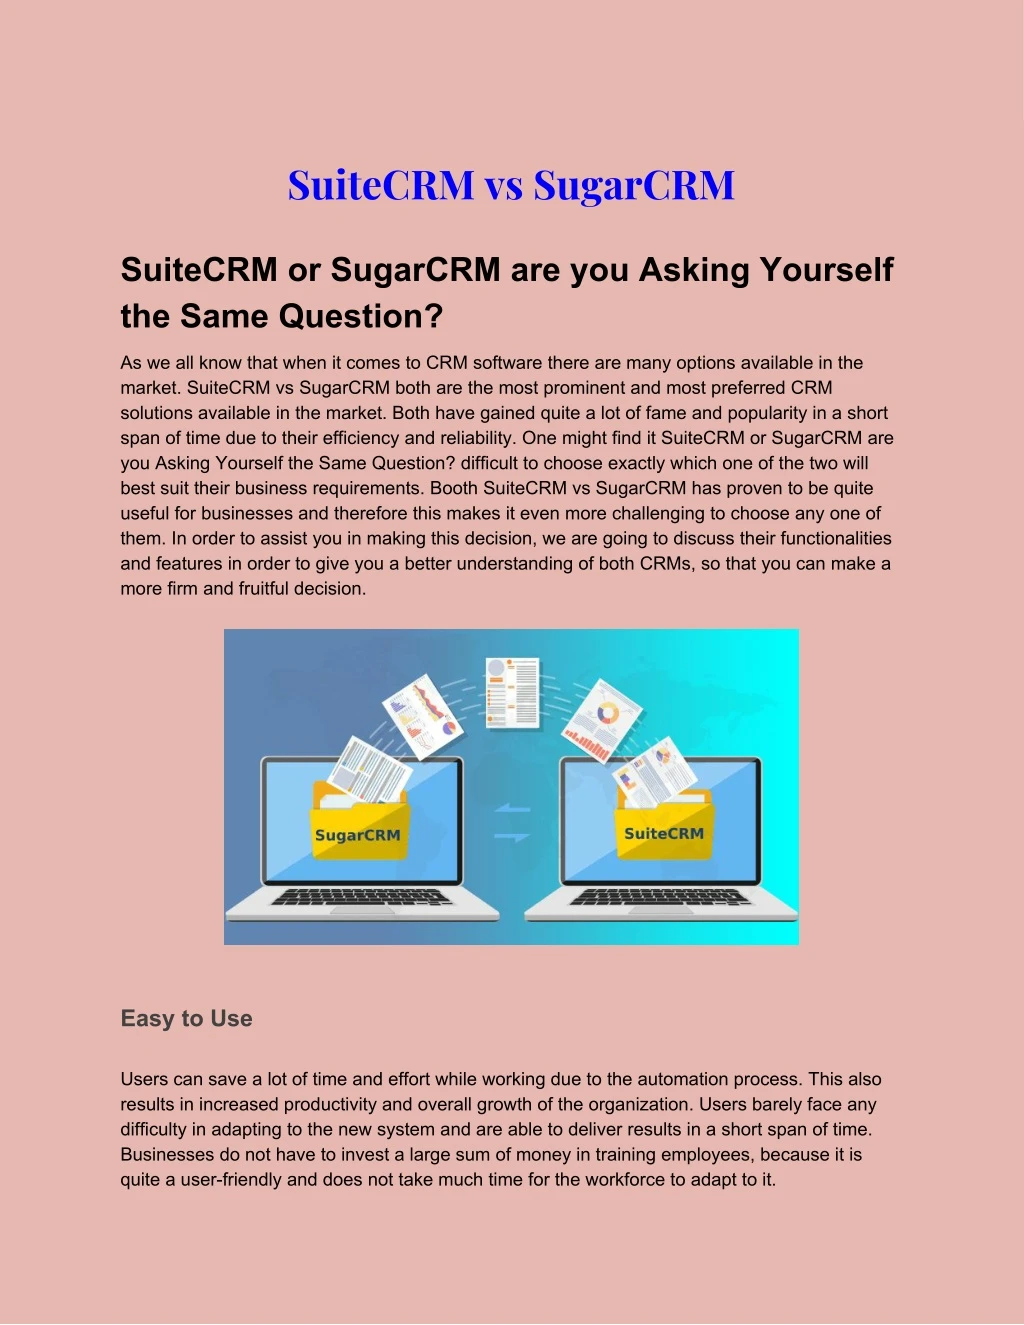 suitecrm vs sugarcrm